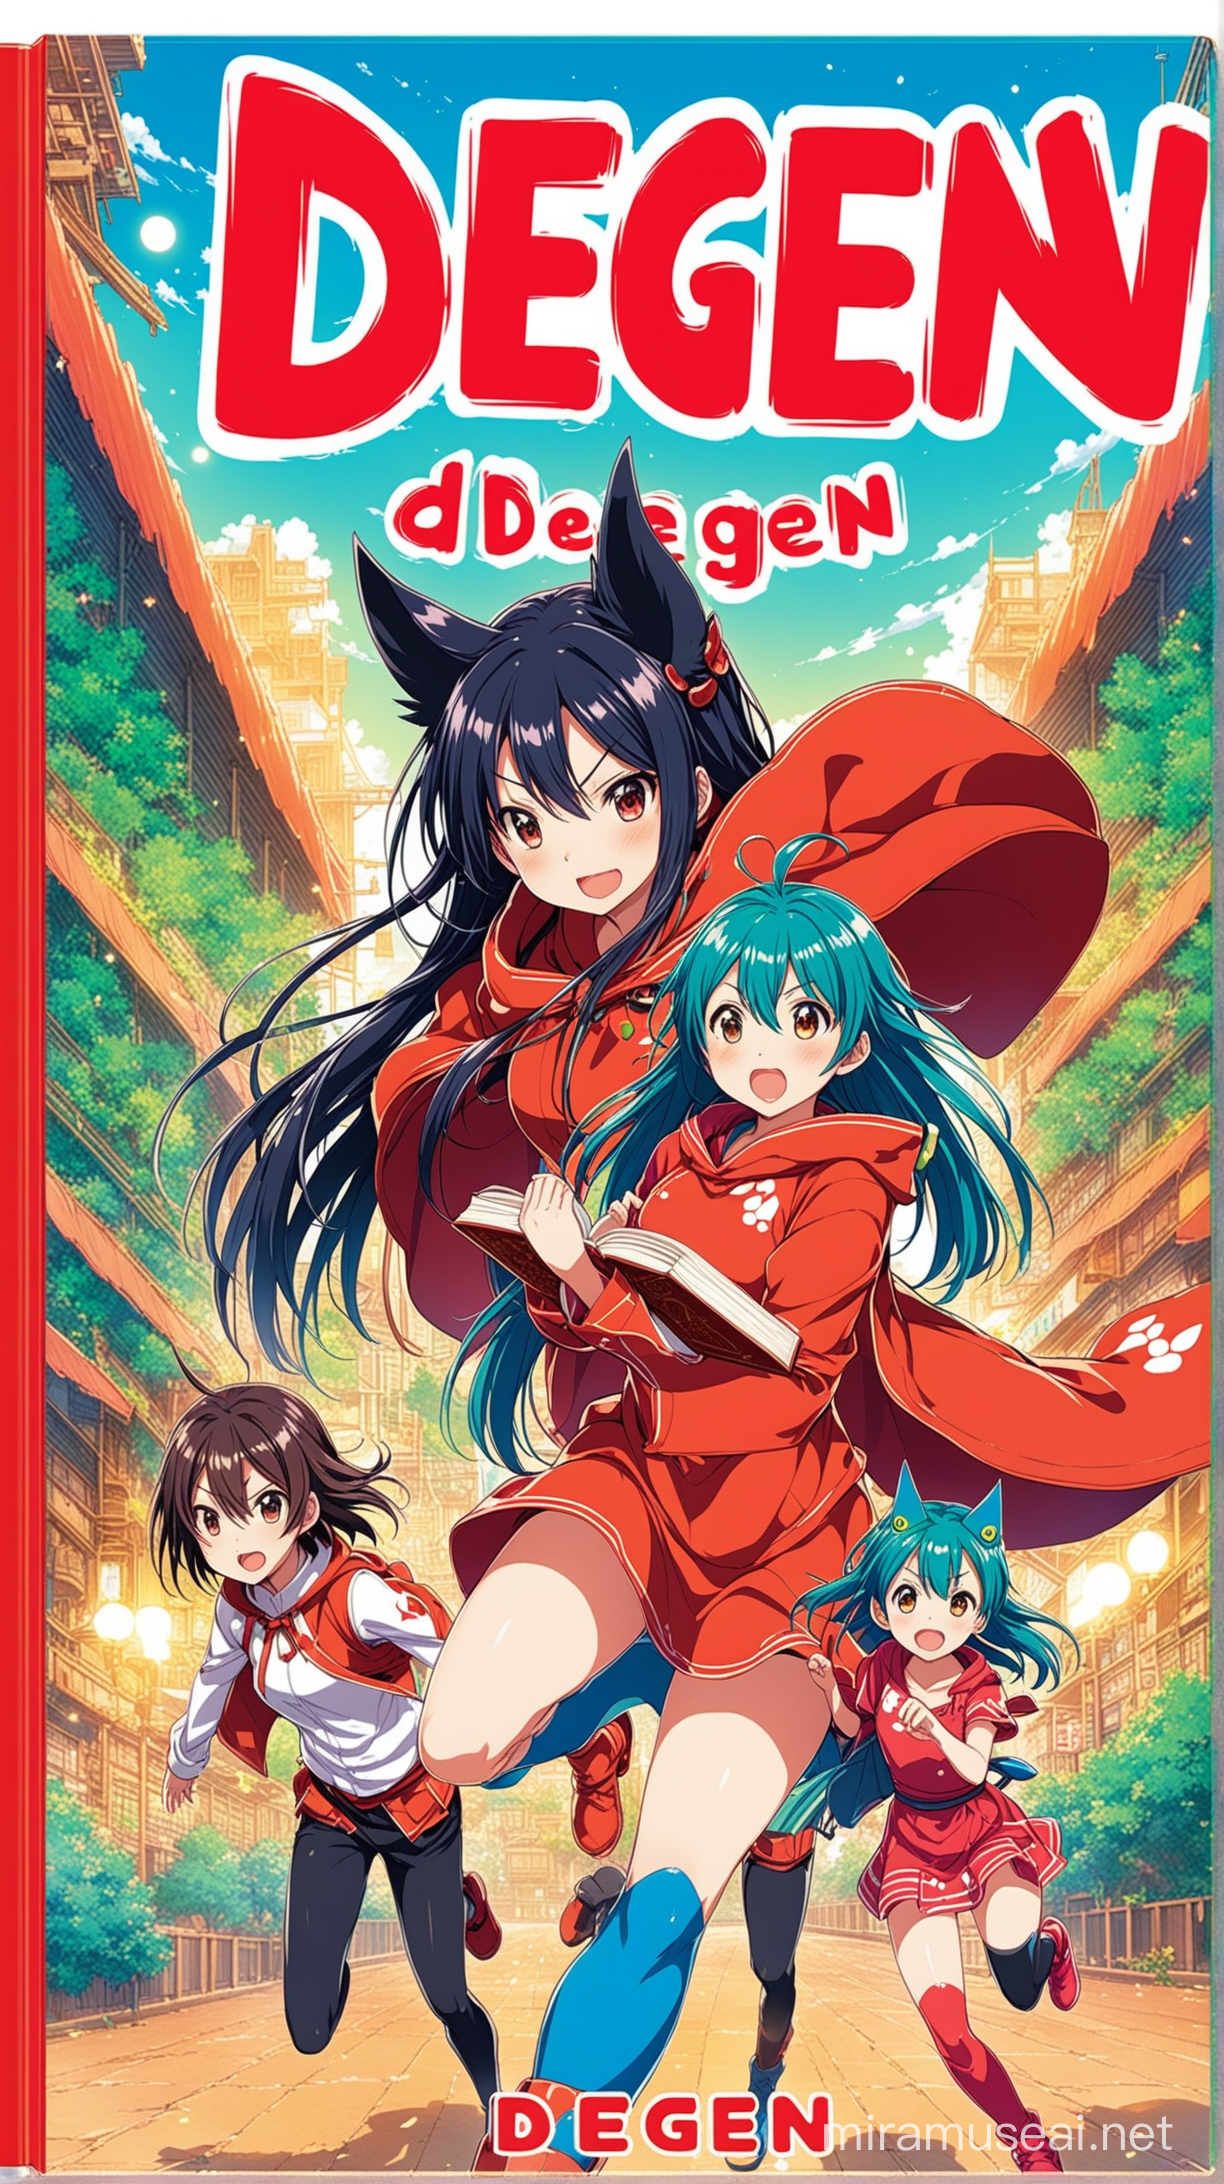 Anime Style Book Cover DEGEN